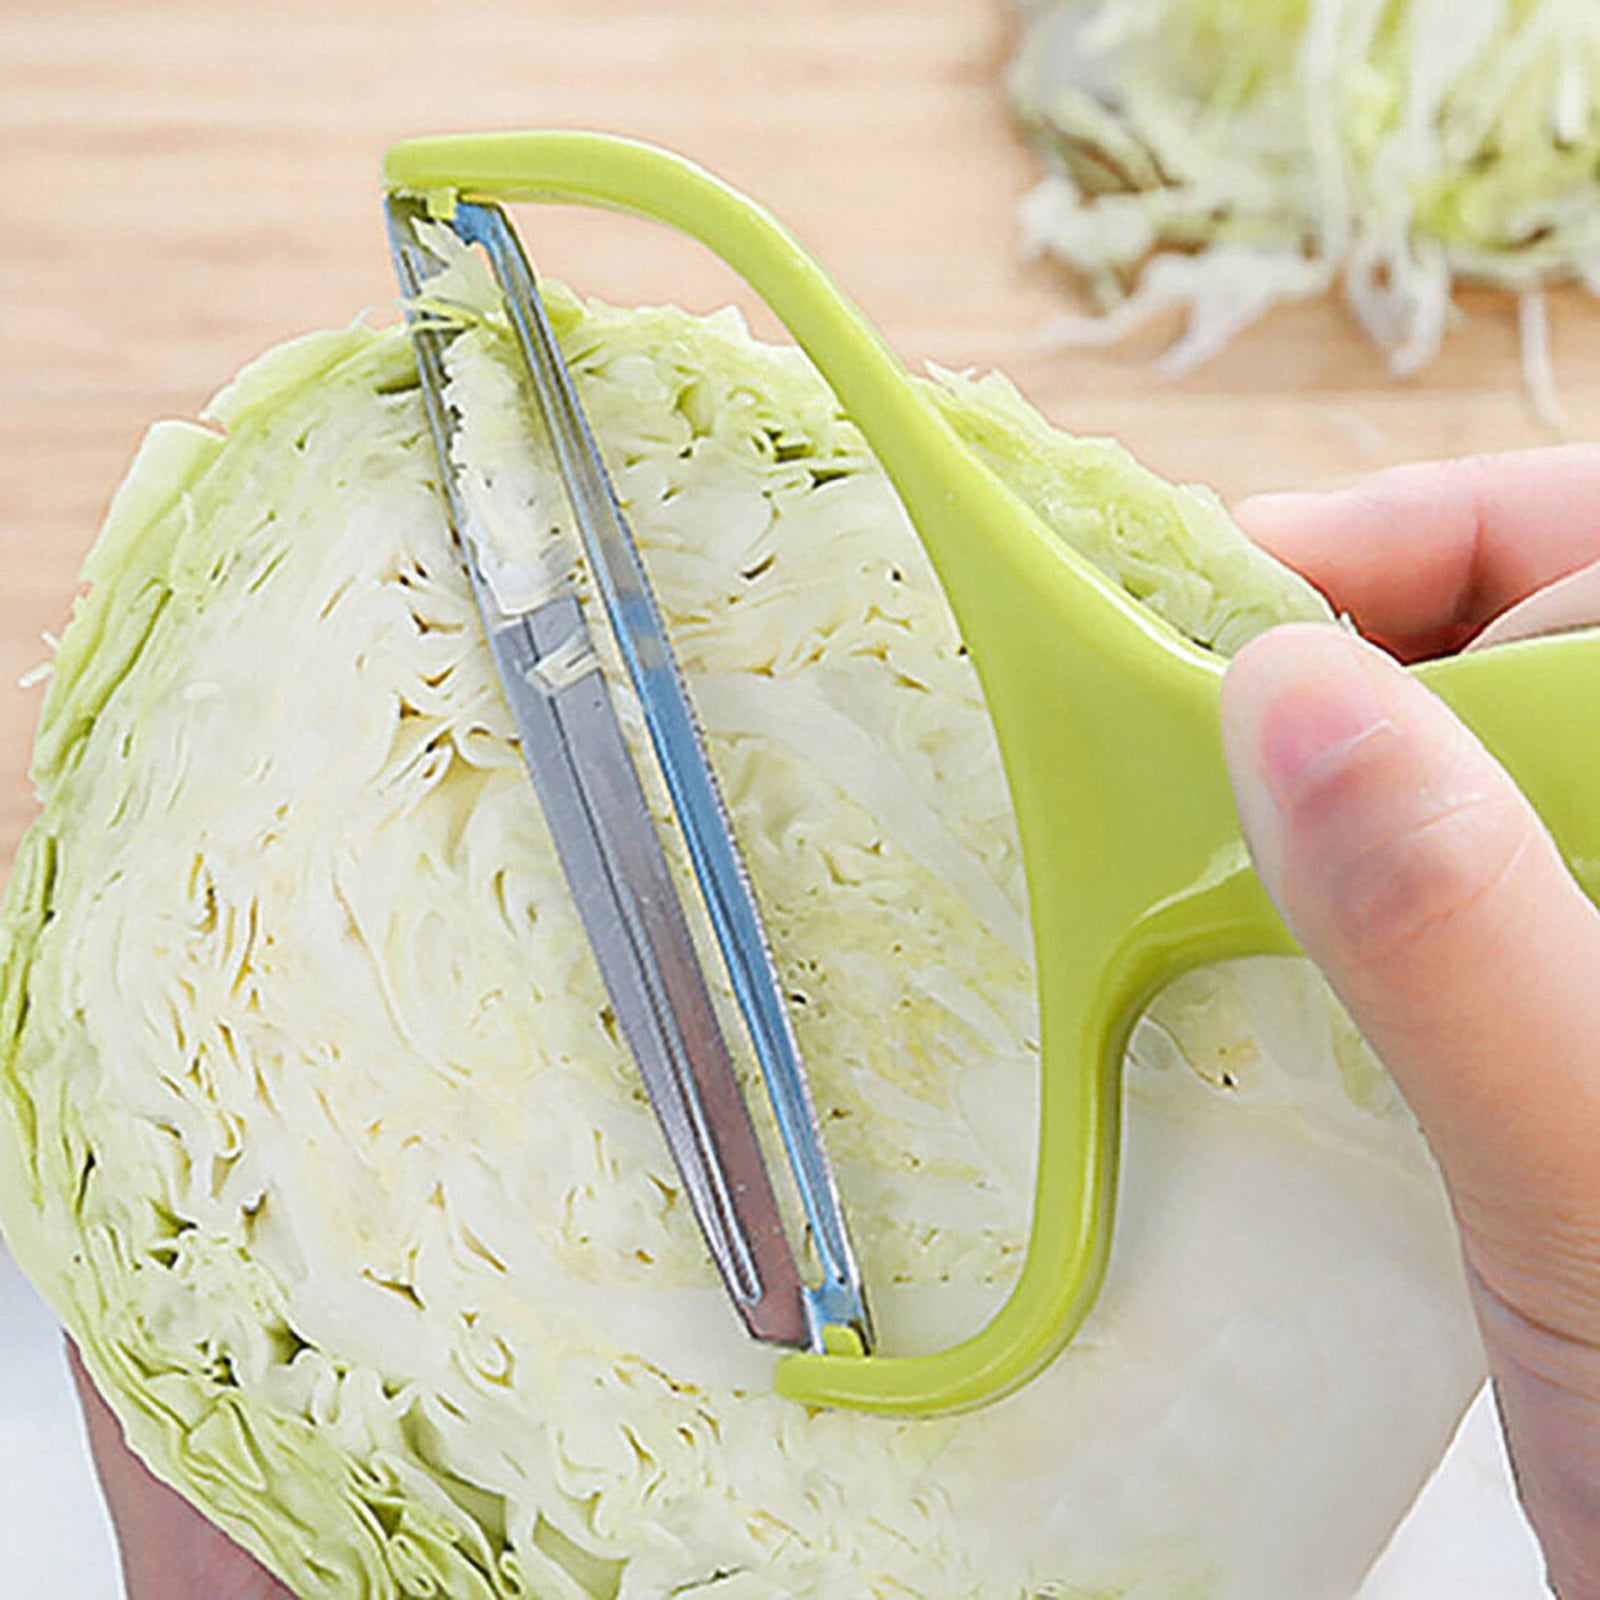 Cabbage Shredder Slicer, Vegetable Potato and Fruit Peeler, Cabbage Cutting  Machine Shredded, Shredded Cabbage Coleslaw, Salad Making, Kitchen Gadget  H8F8 